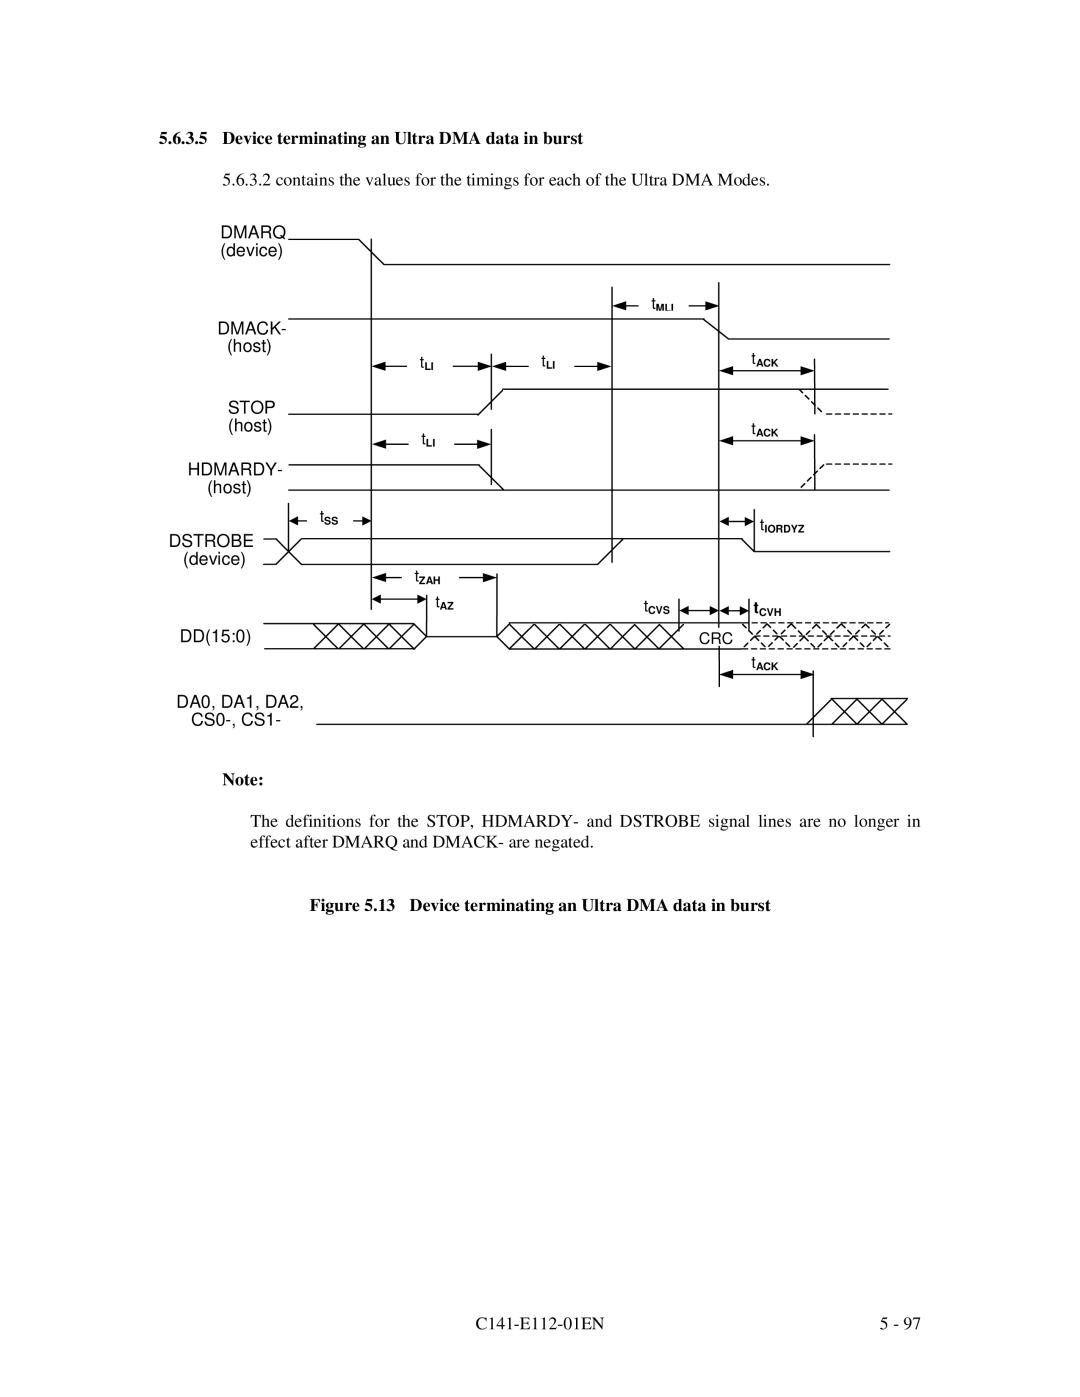 Fujitsu MPG3XXXAH manual Device terminating an Ultra DMA data in burst, DMARQ device, DA0, DA1, DA2 CS0-, CS1 